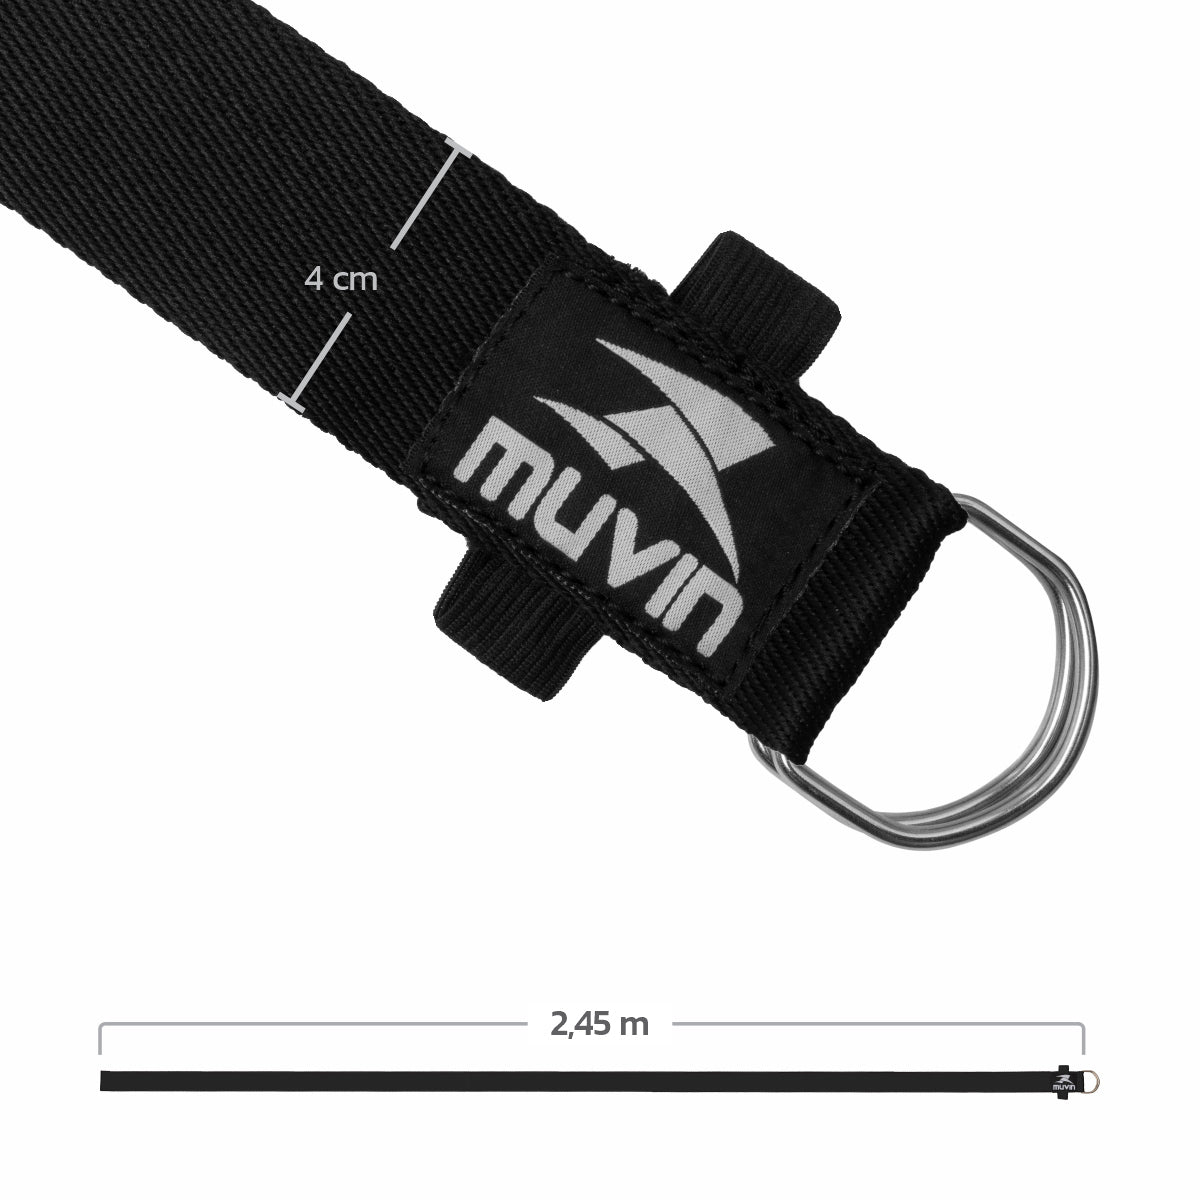 Kit Tapete para Yoga em PVC + Strap para Yoga - 245cm + Bolster Retangular para Yoga - KIT-005500